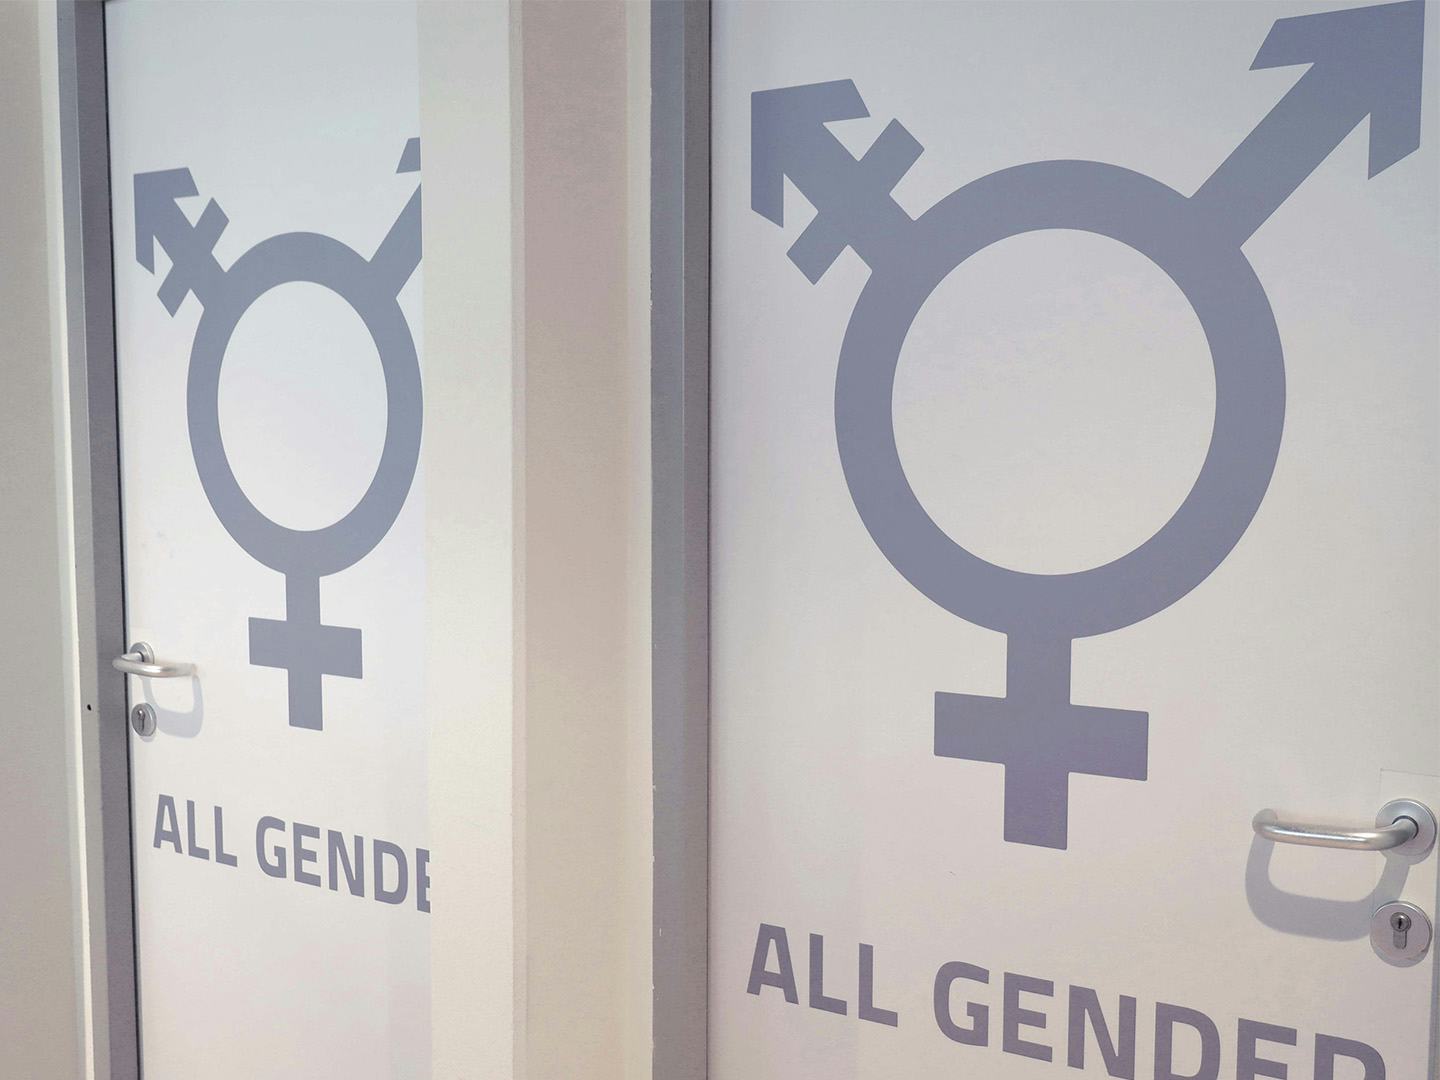 Foto: Toiletten mit Aufschrift "All Gender"